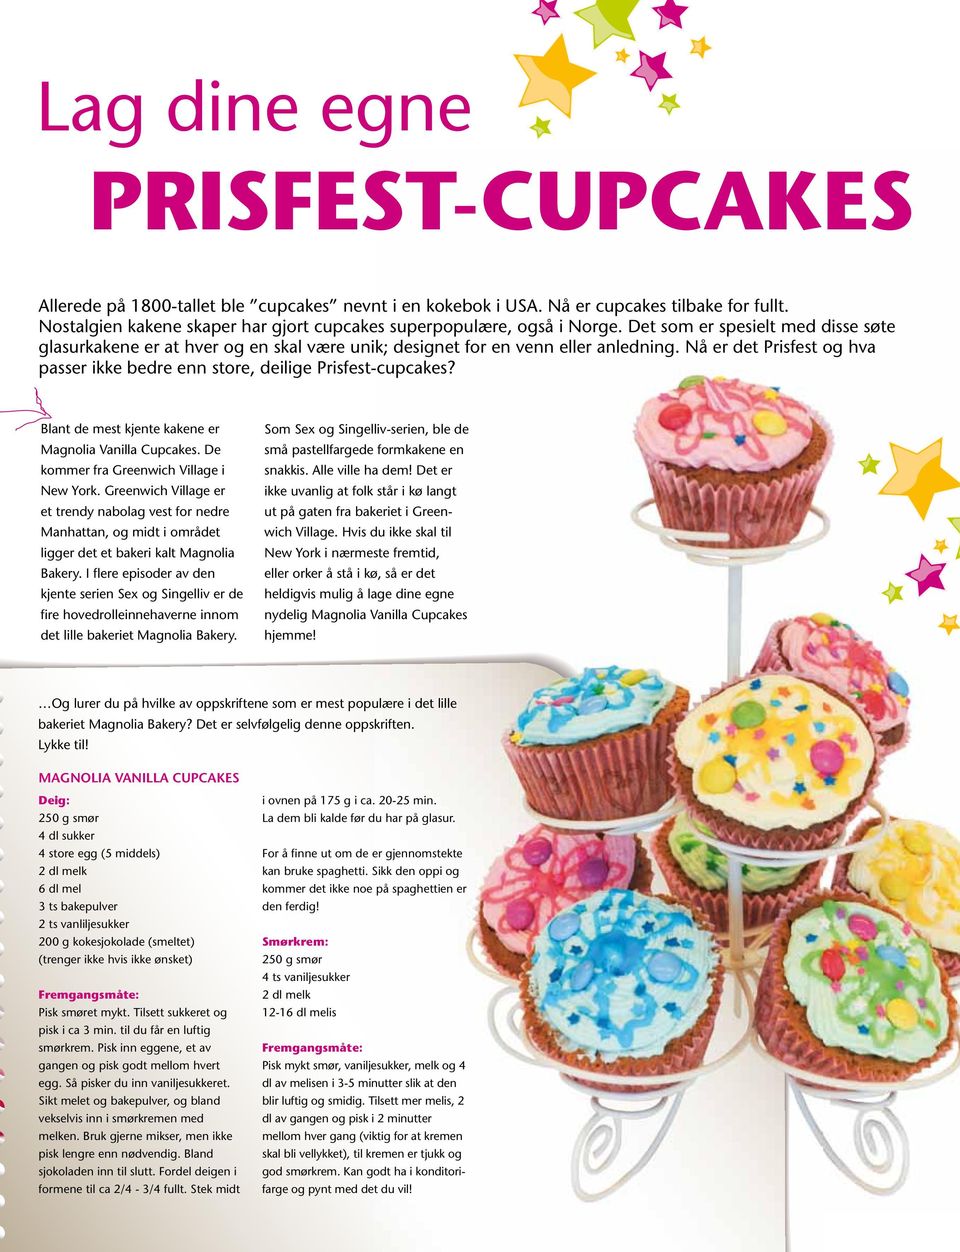 Nå er det Prisfest og hva passer ikke bedre enn store, deilige Prisfest-cupcakes? Blant de mest kjente kakene er Som Sex og Singelliv-serien, ble de Magnolia Vanilla Cupcakes.